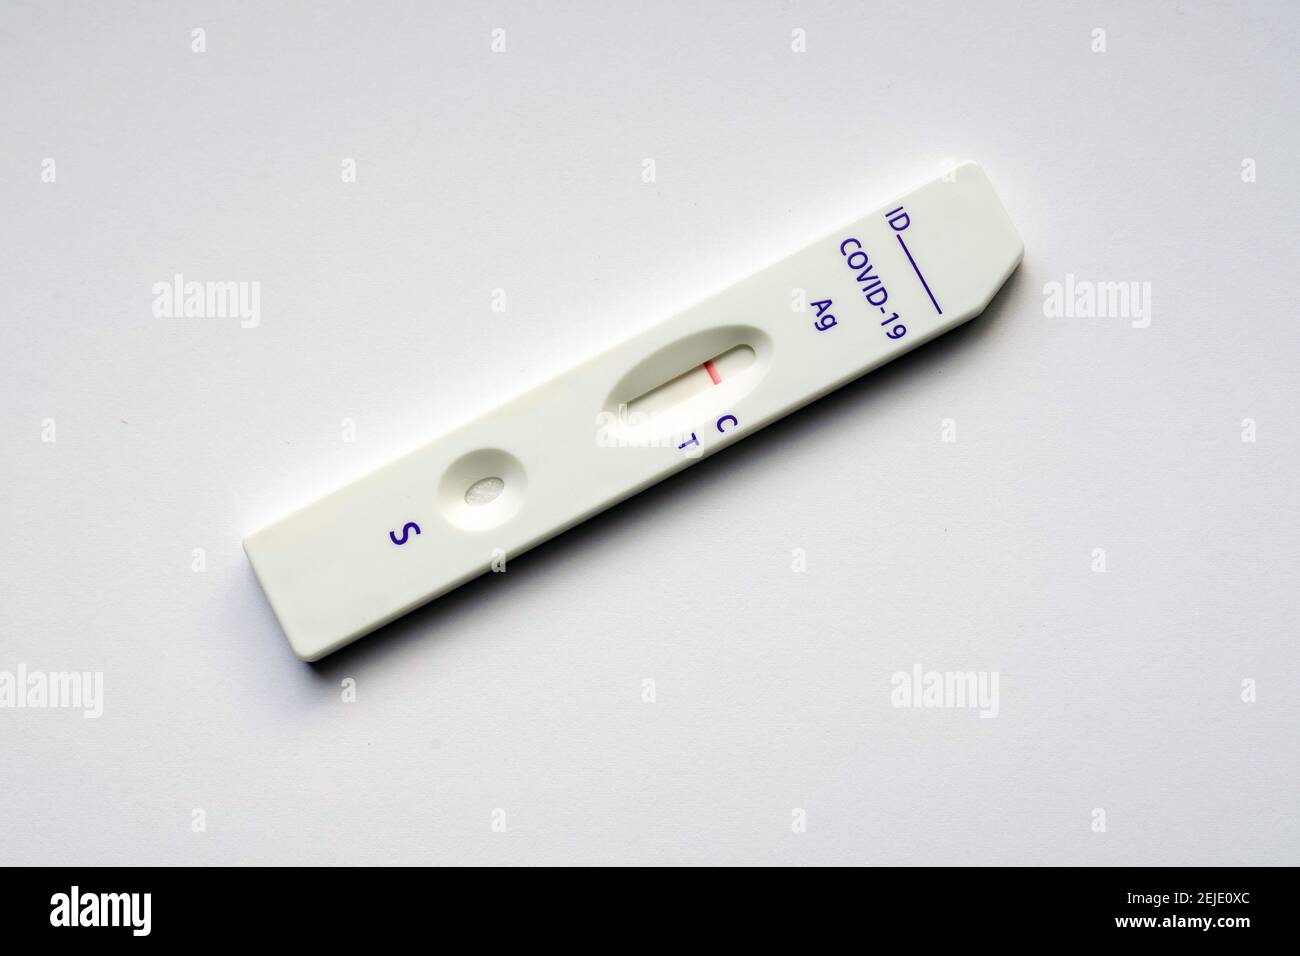 Corona-Schnelltest: Die Testkassette zeigt einen negativen Covid-19-Antigen-Schnelltest der chinesischen Firma Joinstar Biomedical mit einer Speichelprobe. --- Corona-Schnelltest: Testkassette zeigt einen durch eine Speichelprobe vorgegebenen negativen Covid-19 Antigen-Schnelltest der chinesischen Firma Joinstar Biomedical. Stockfoto